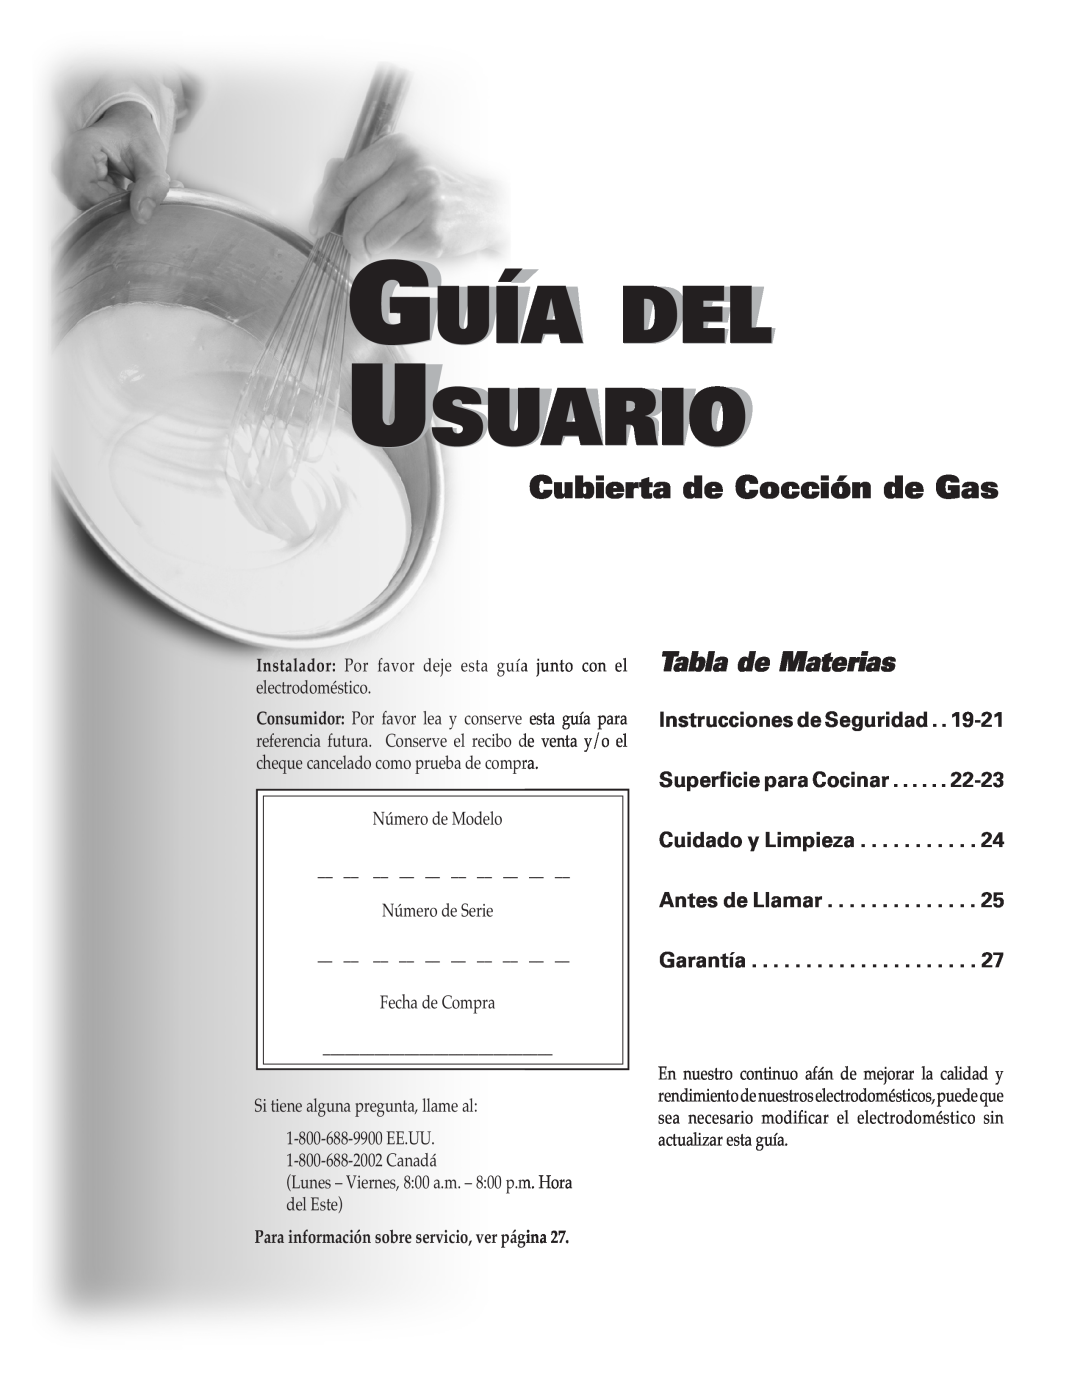 Maytag MGC4436BDB Guía Del Usuario, Cubierta de Cocción de Gas, Tabla de Materias, Antes de Llamar Garantía 